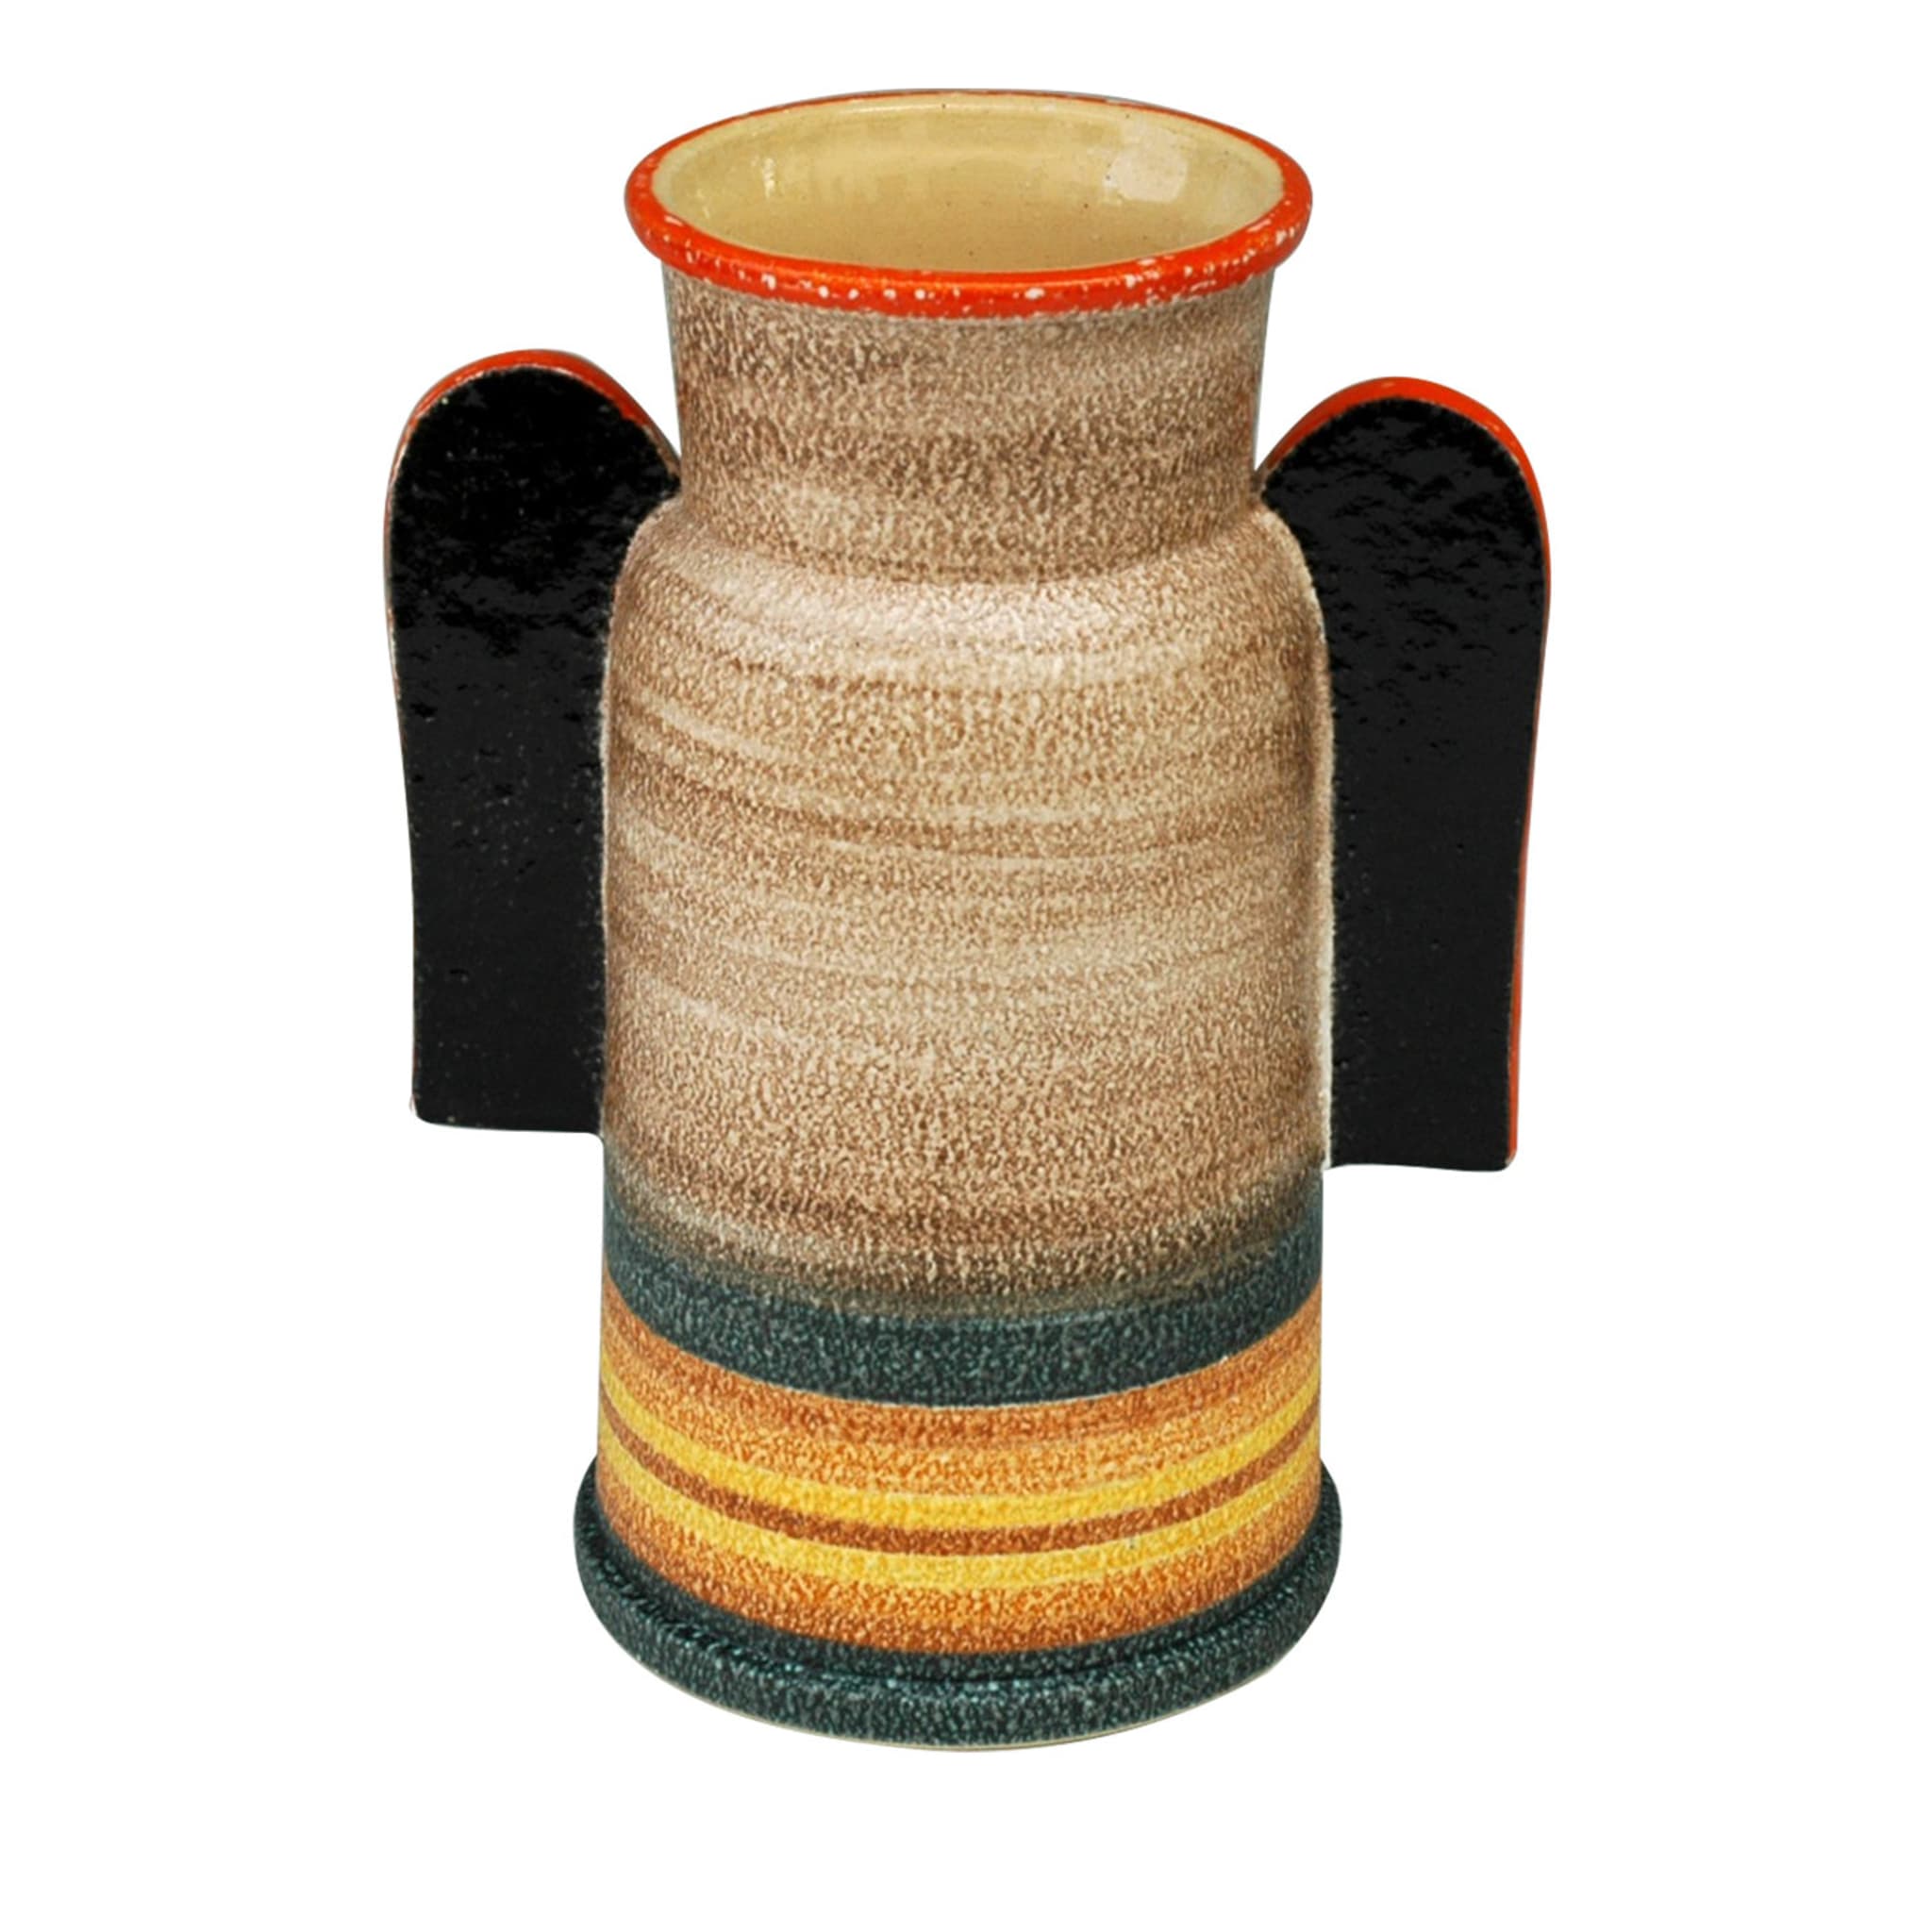 Littorio Ceramic Vase - Main view